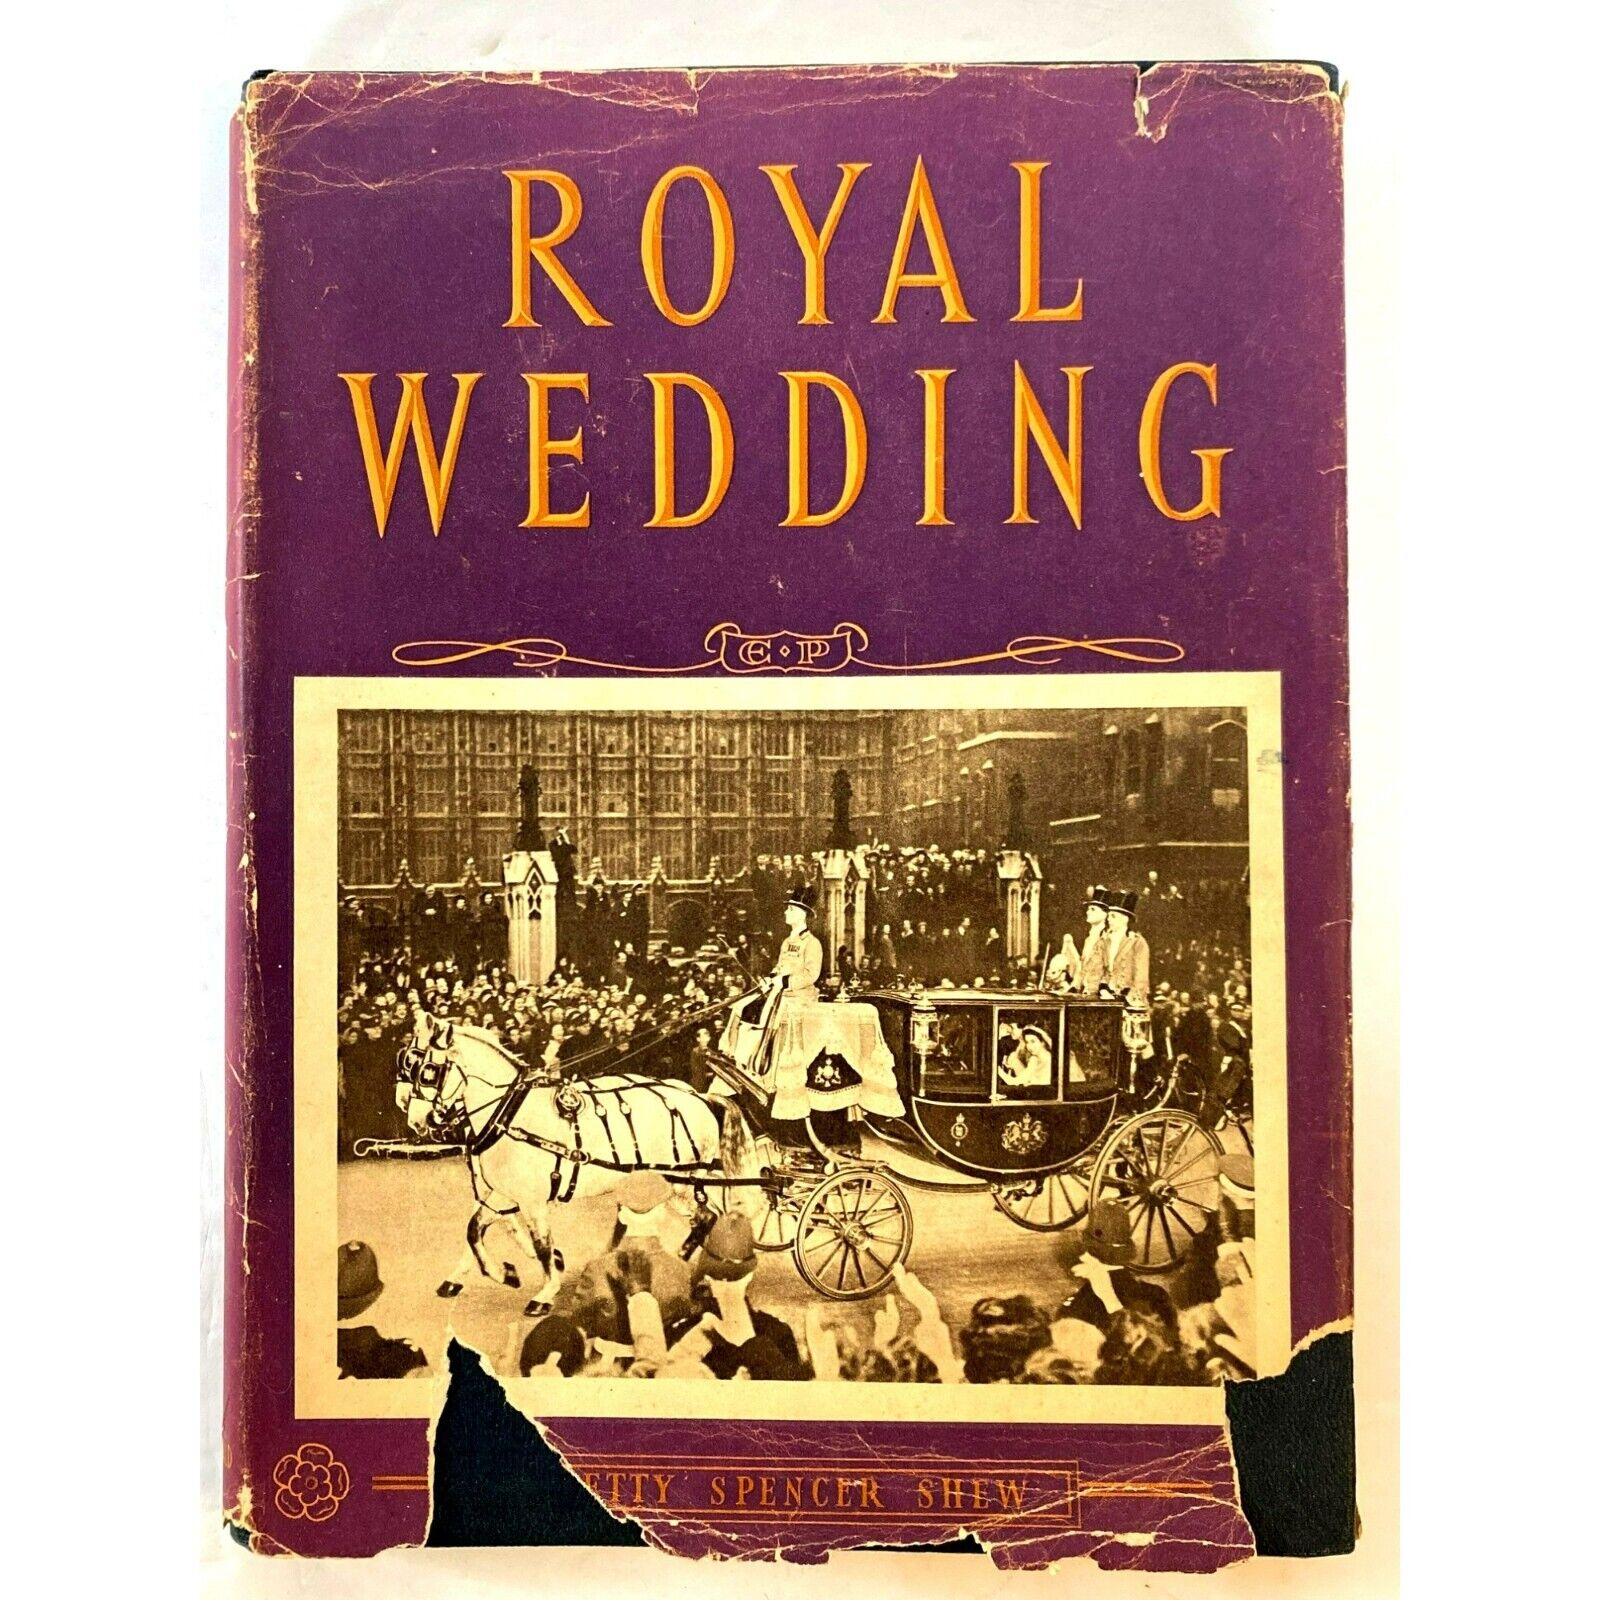 Royal Wedding Queen Elizabeth London Macdonald & Co Shew 1947 RARE Photos